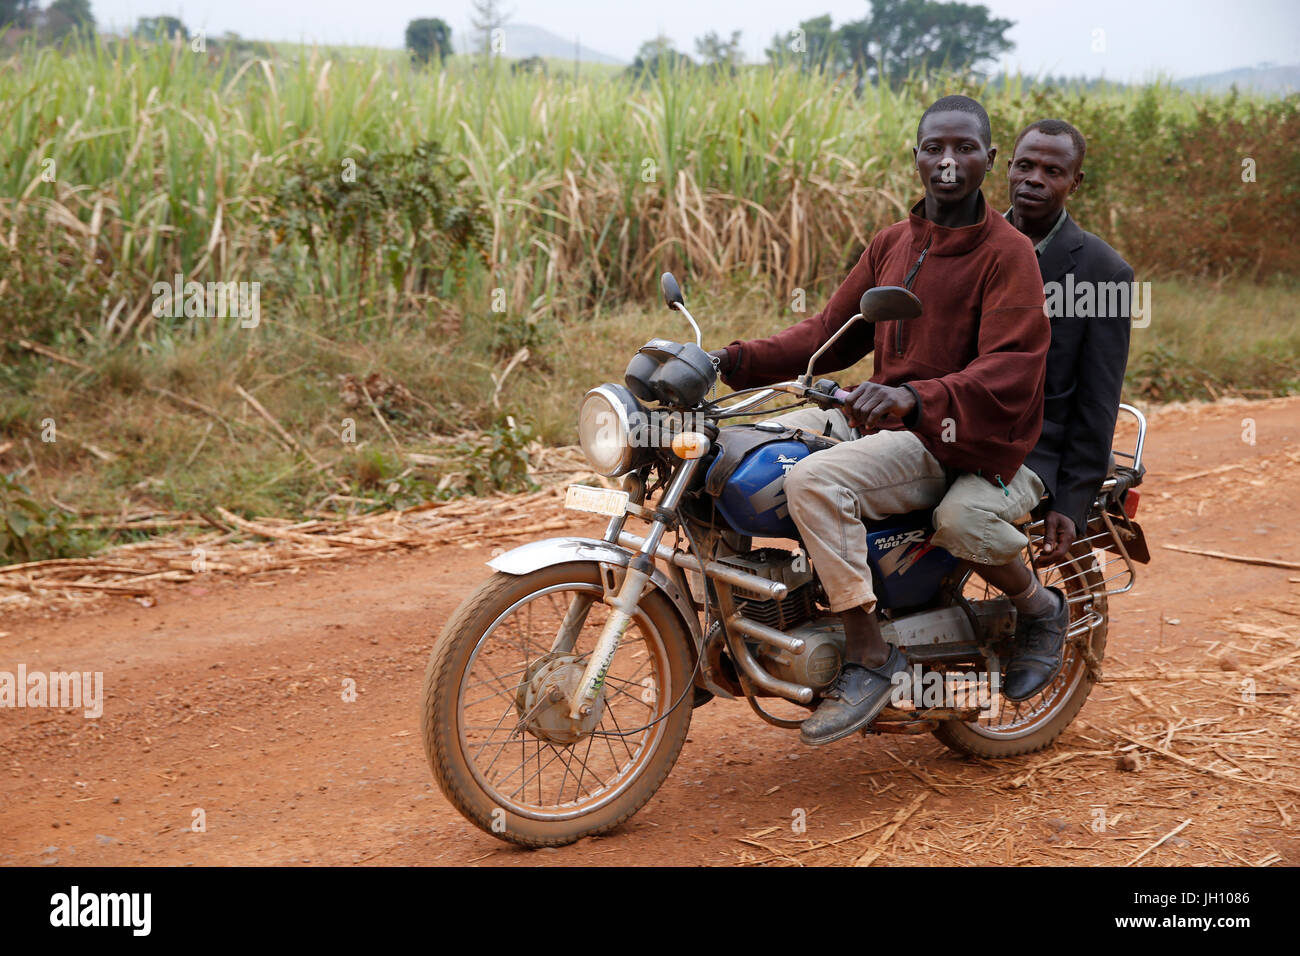 Ugandan men on a motorcycle. Uganda. Stock Photo